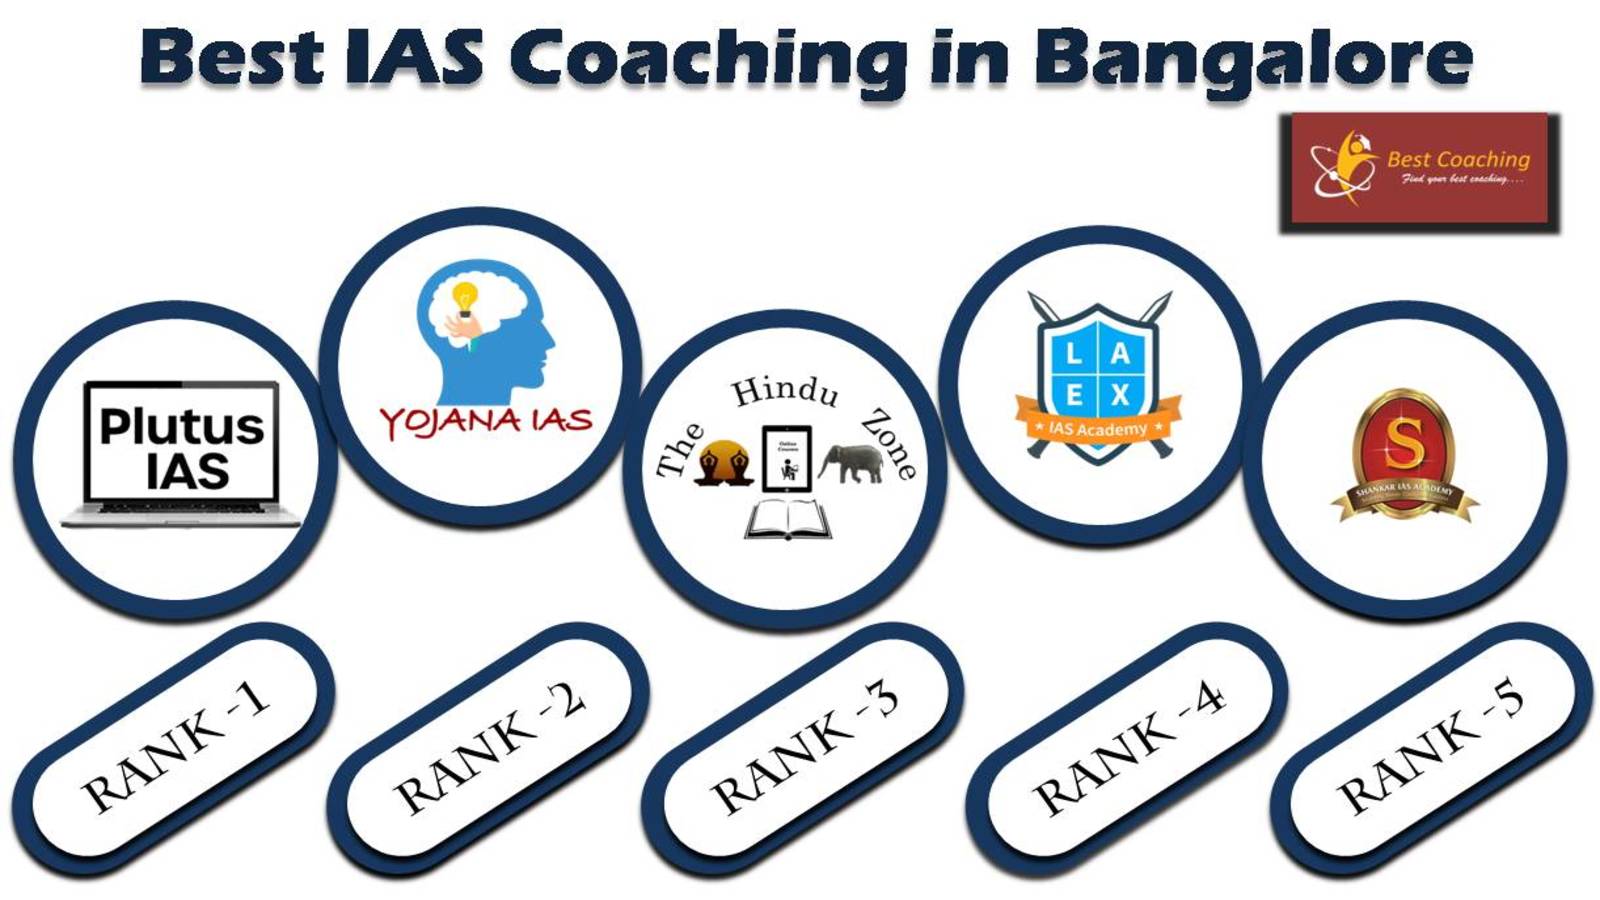 Best IAS Coaching Institute in Bangalore